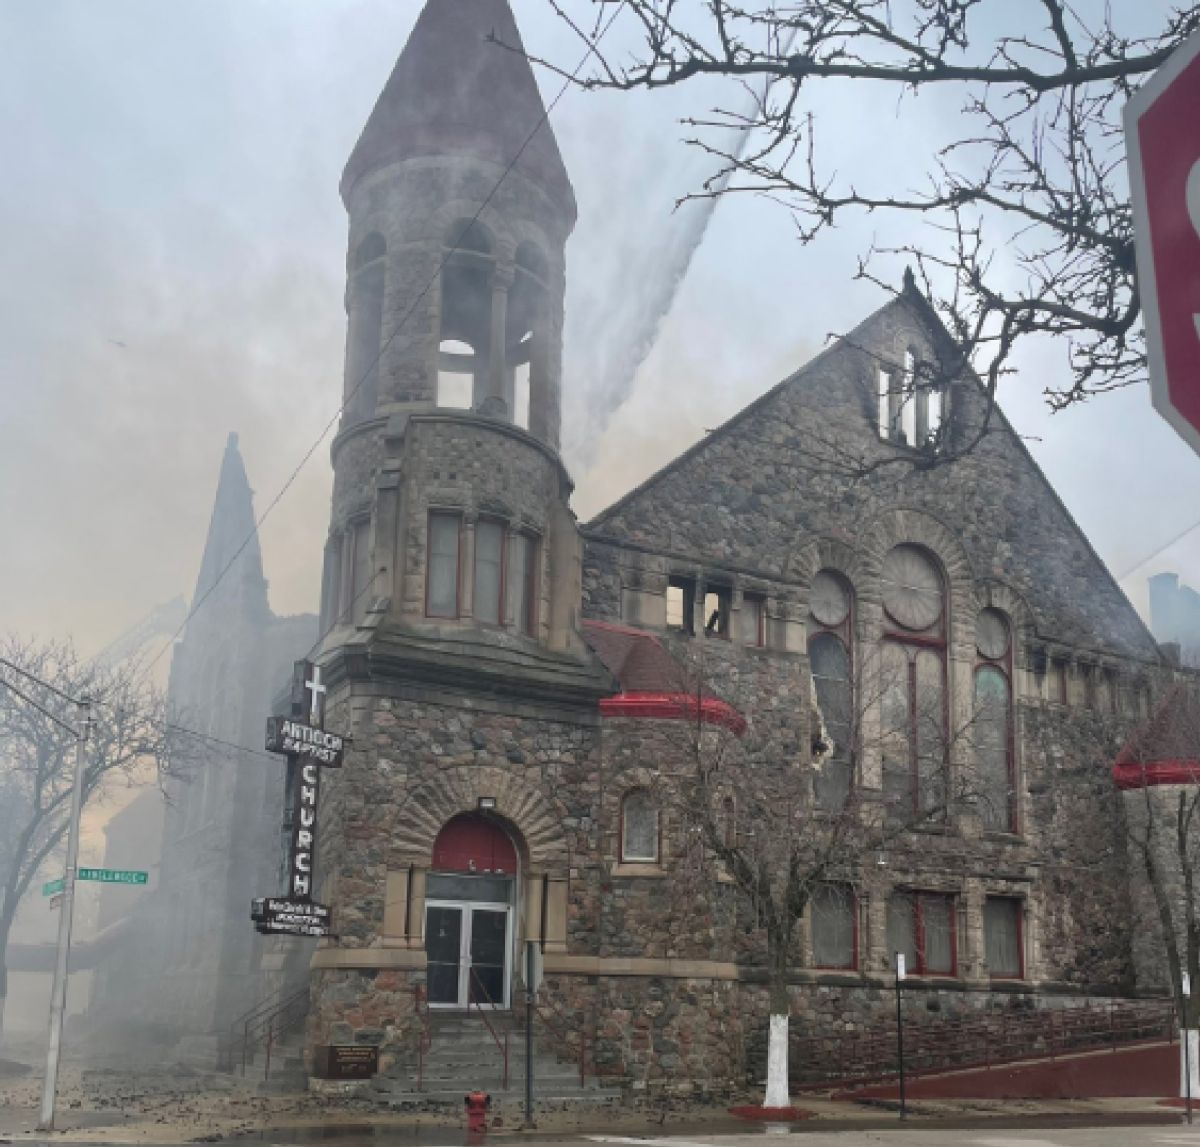 Los miembros de una conocida iglesia cristiana en Englewood estarán recaudando fondos para reconstruir su iglesia. Foto Cortesía Chicago Fire Media

